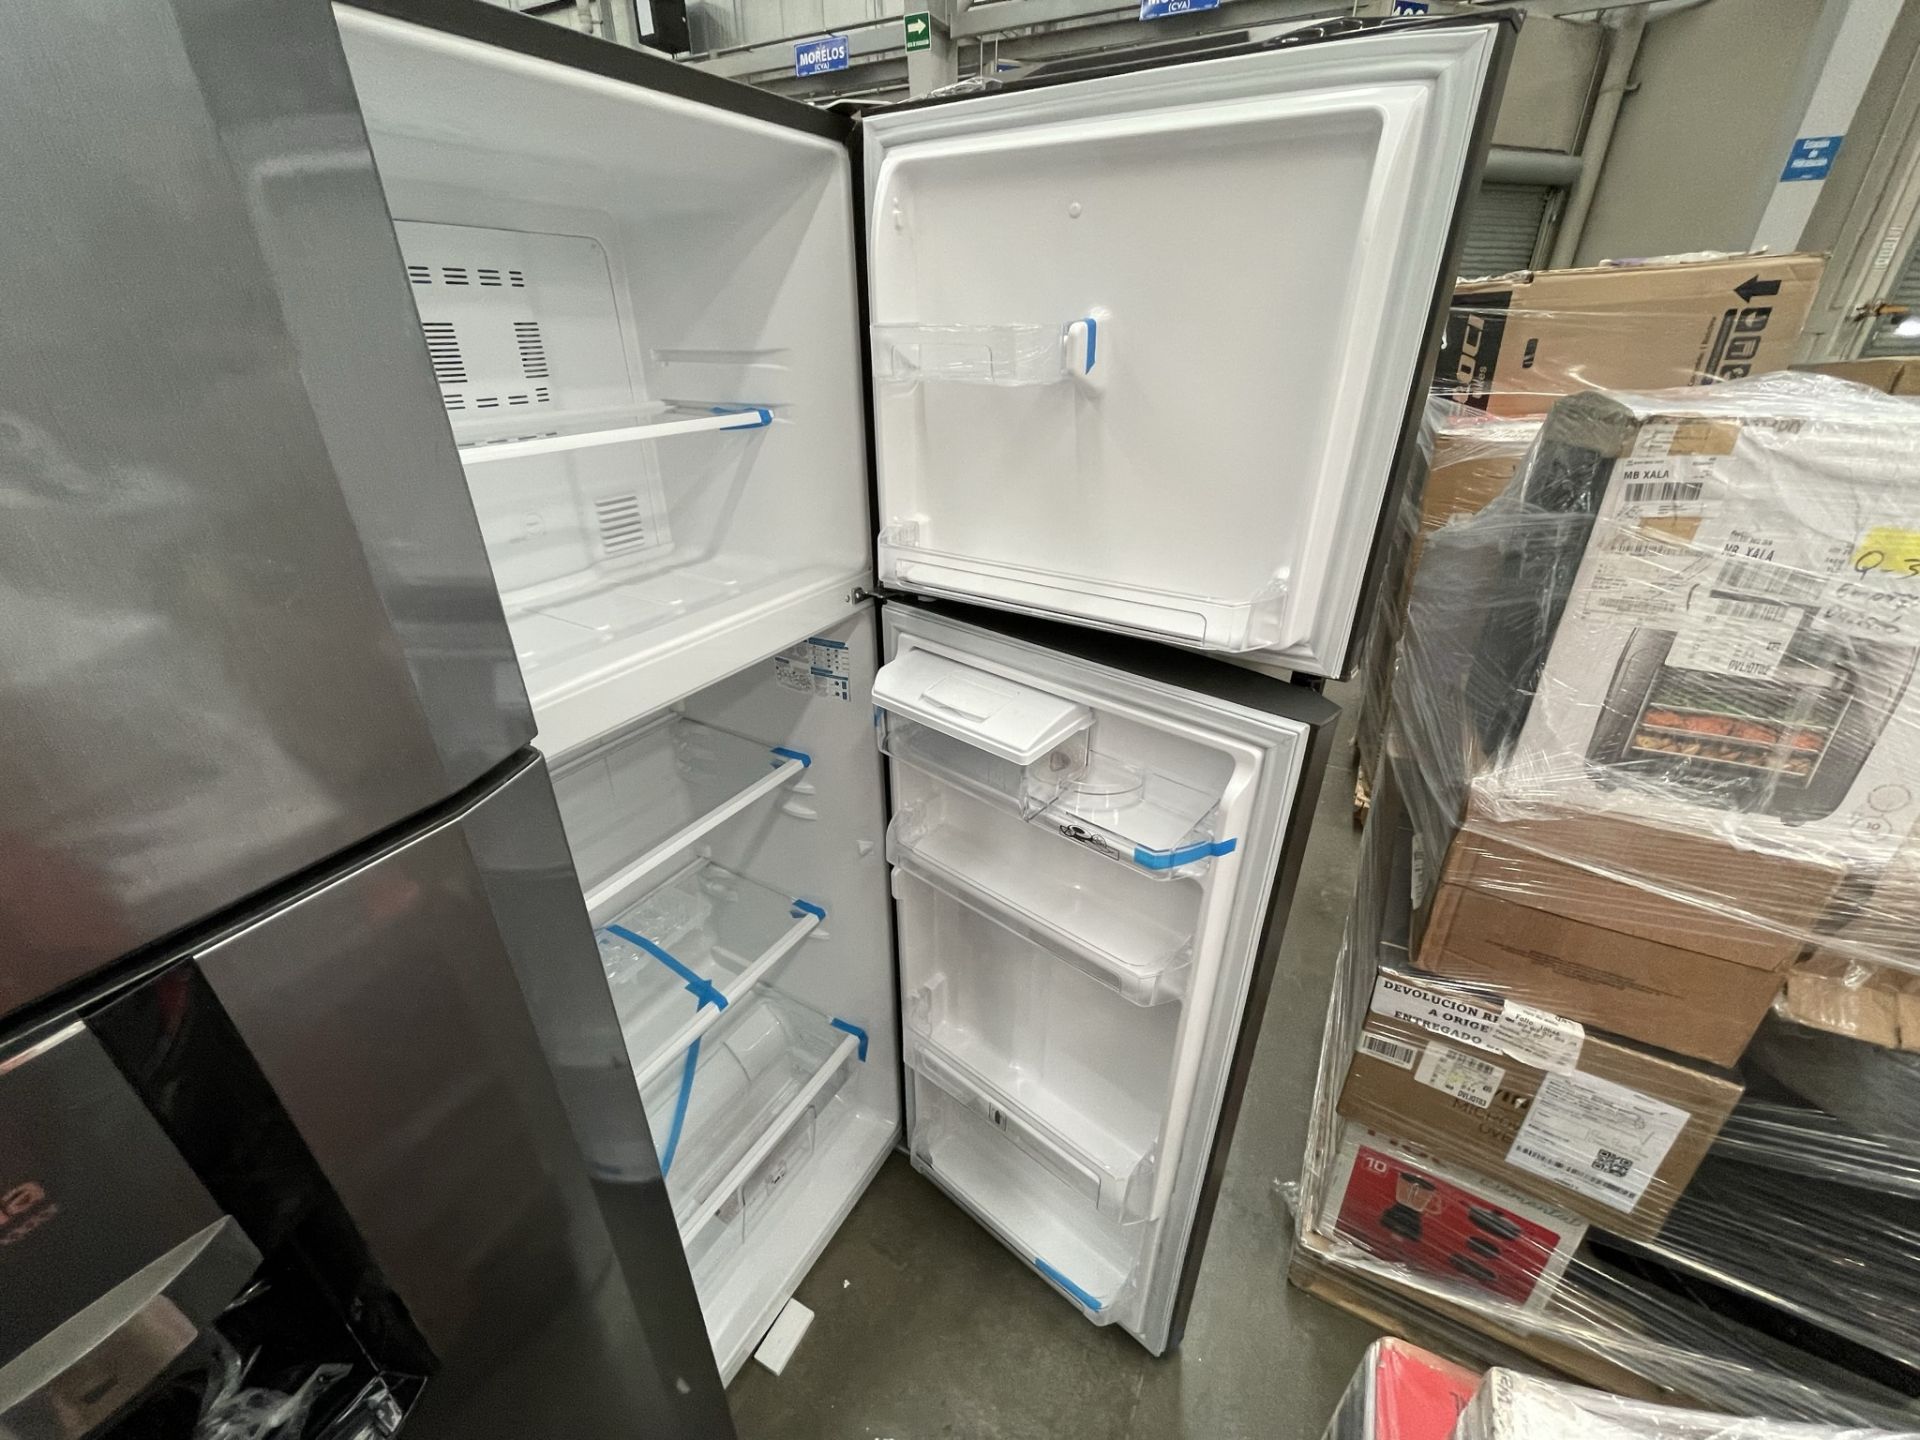 (EQUIPO NUEVO) 1 Refrigerador Con Dispensador De Agua Marca MABE, Modelo RMA300FJMRDA, Serie 2210P7 - Image 4 of 8